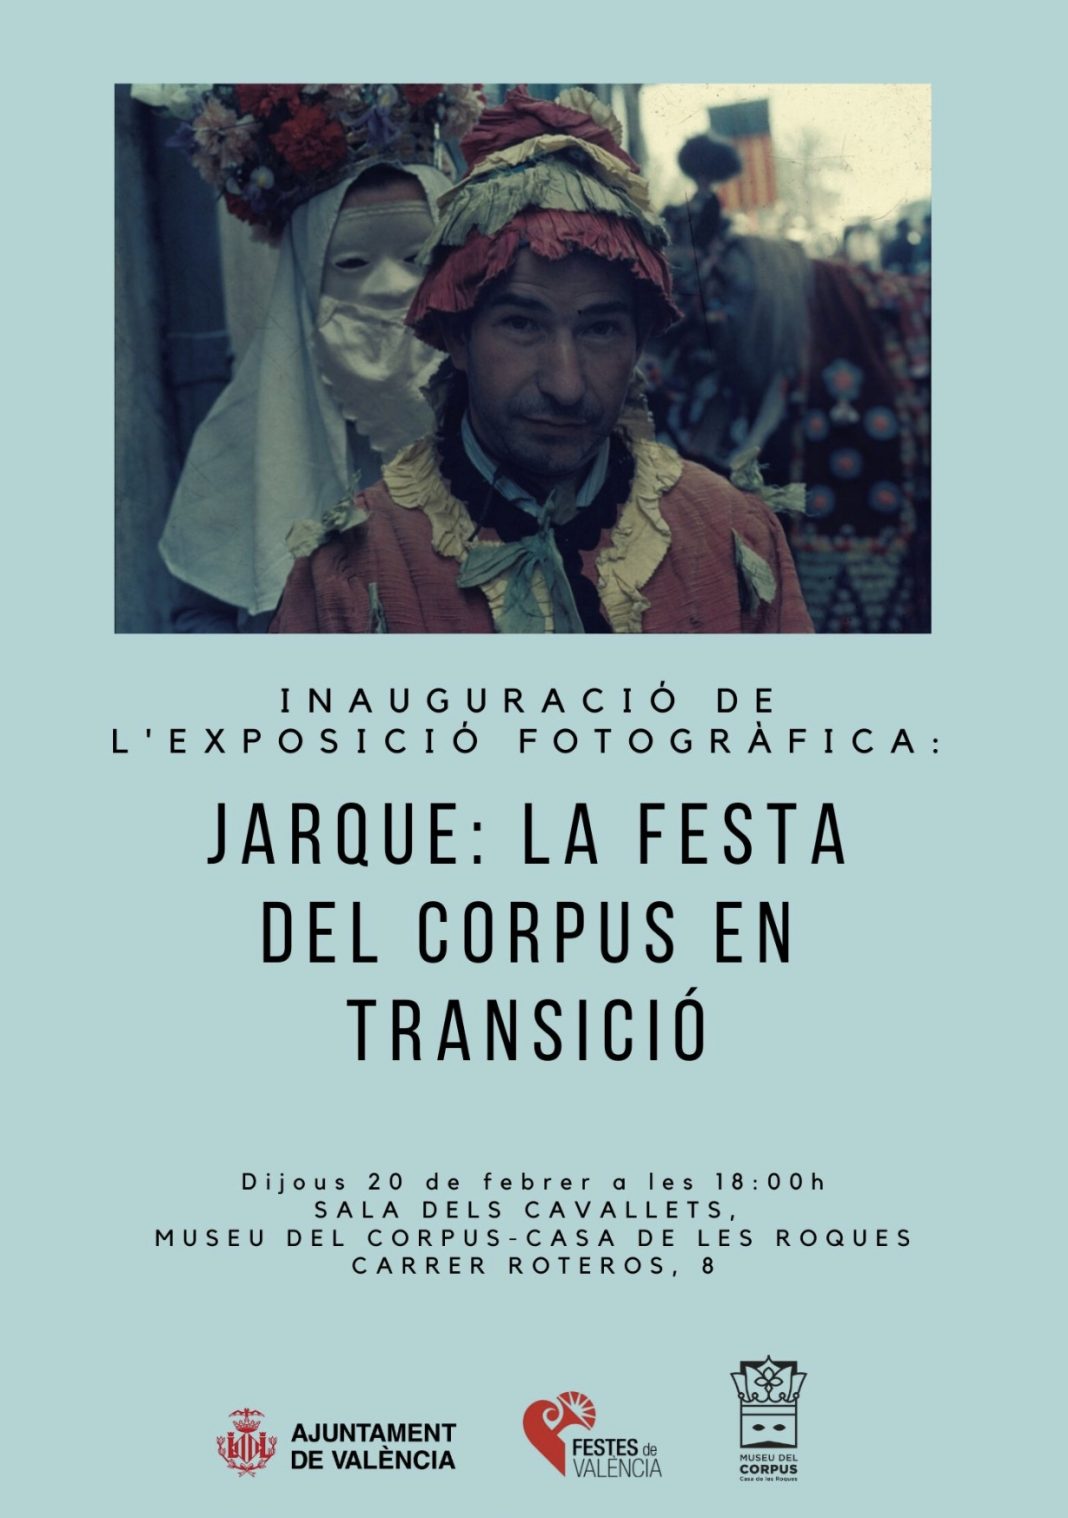 El Museu del Corpus inaugura la exposición de Francesc Jarque 